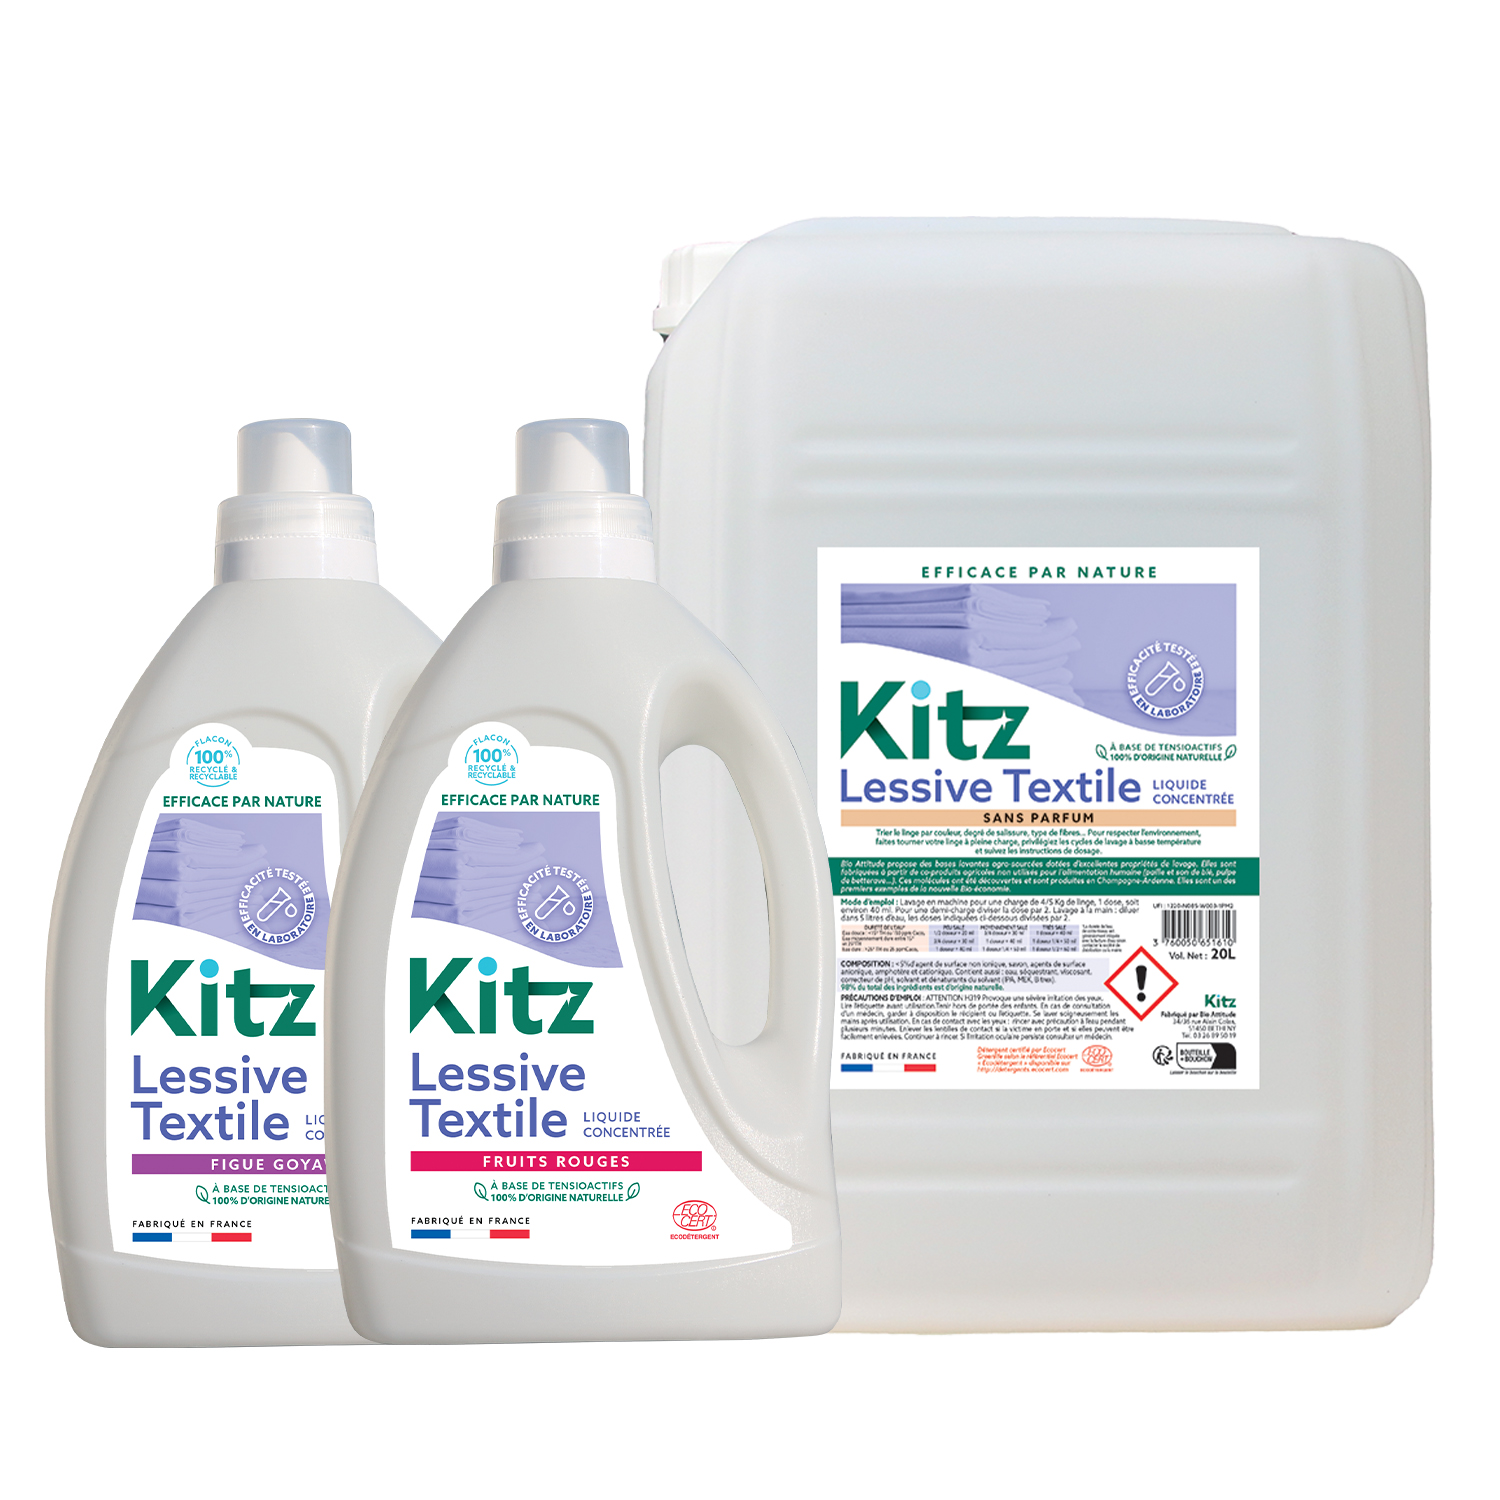 Lessive Liquide Kitz - Nettoyants écologiques puissants pour l'entretien des locaux professionnels et de la maison.